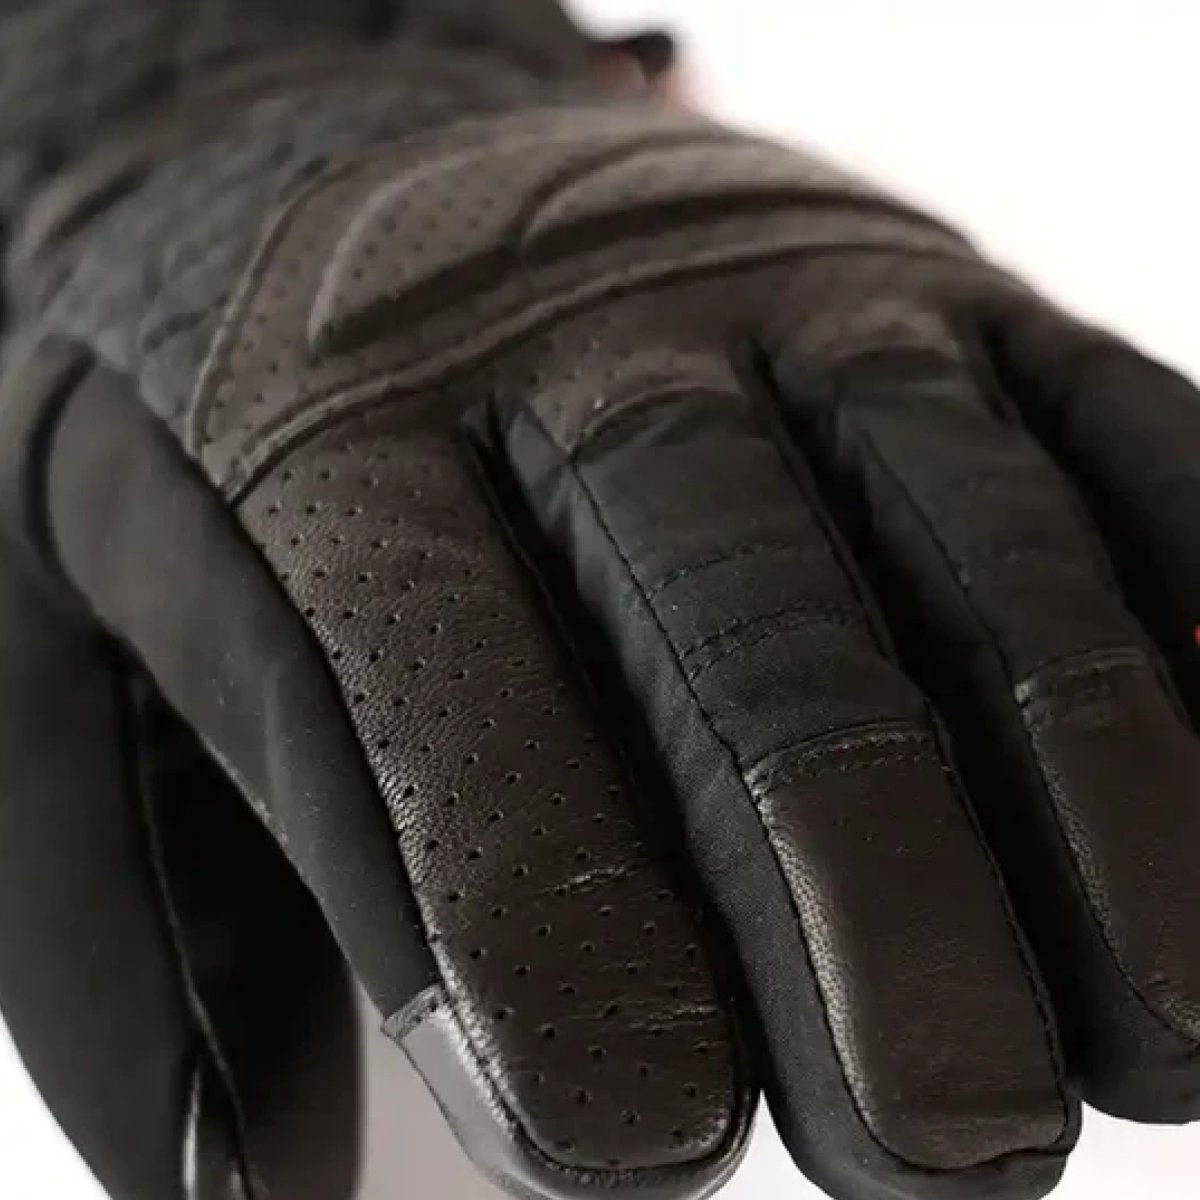 Rukavice vyhřívané Lenz Heat glove 6.0 Finger Cap W - černá (bez baterie)